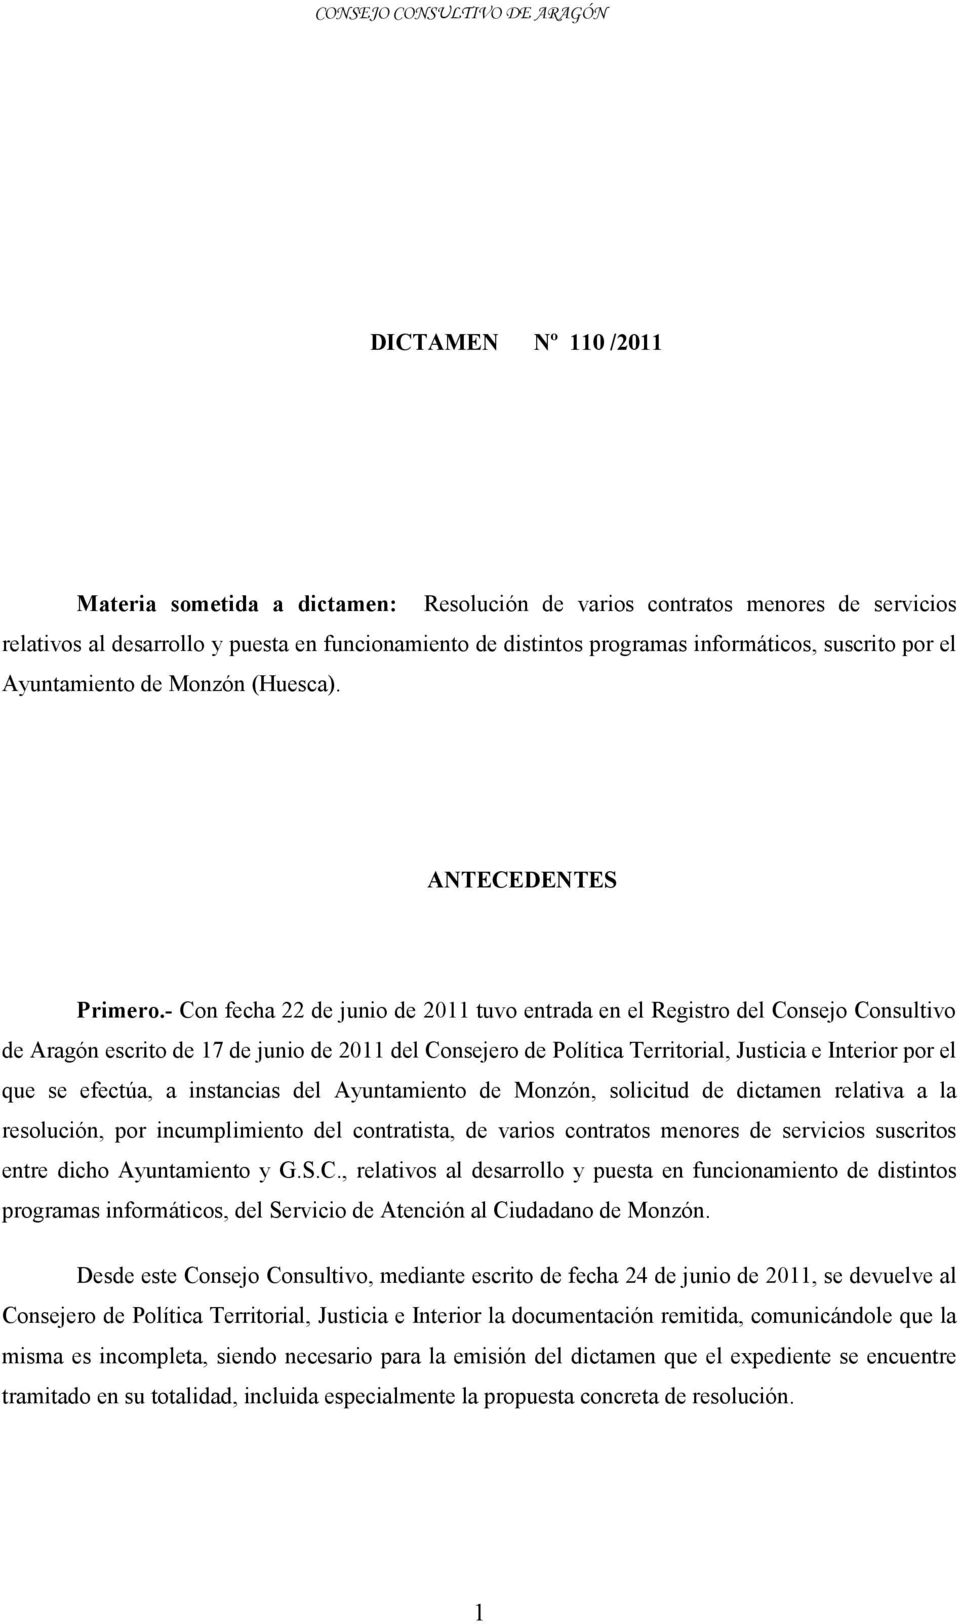 - Con fecha 22 de junio de 2011 tuvo entrada en el Registro del Consejo Consultivo de Aragón escrito de 17 de junio de 2011 del Consejero de Política Territorial, Justicia e Interior por el que se